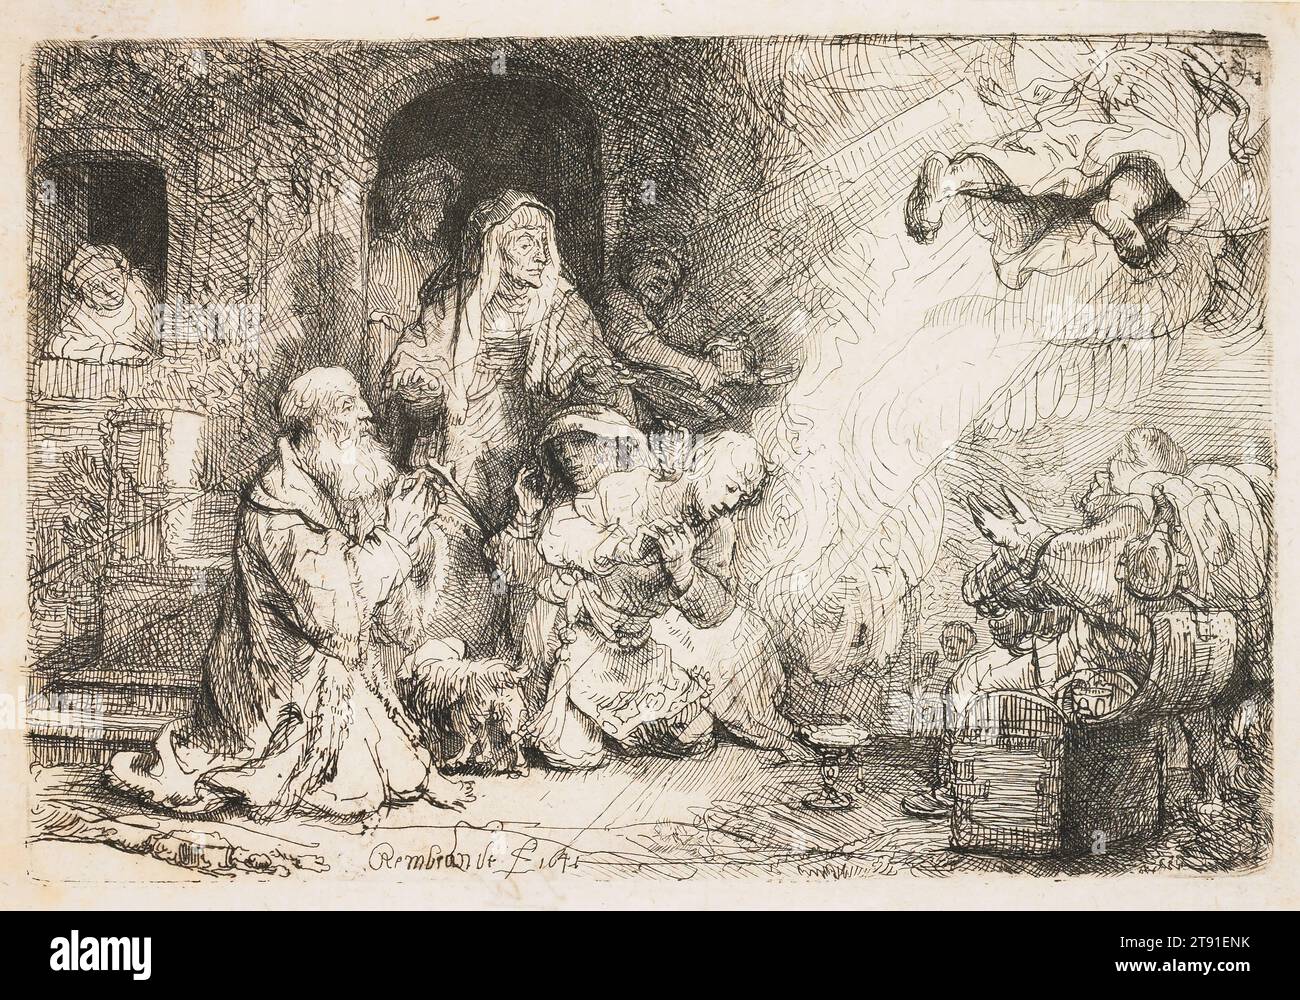 L'Ange partant de la famille de Tobias, 1641, Rembrandt Harmensz. Van Rijn, néerlandais, 1606–1669, 4 1/16 x 6 1/16 po. (10,3 x 15,4 cm) (assiette), gravure avec des touches de pointe sèche, pays-Bas, 17e siècle, avec Tobias en sécurité à la maison, la dette récupérée, et la vue de Tobit restaurée, la mission de Raphaël est terminée. Il révèle enfin son identité alors qu'il part dans une vague librement esquissée de nuages et de draperies. Doué de perception spirituelle, seul Tobit – et sa femme, Anna – sont témoins de son départ, qui étonne tellement Anna qu’elle laisse tomber sa canne. Dans la Bible, juste père et fils sont présents Banque D'Images